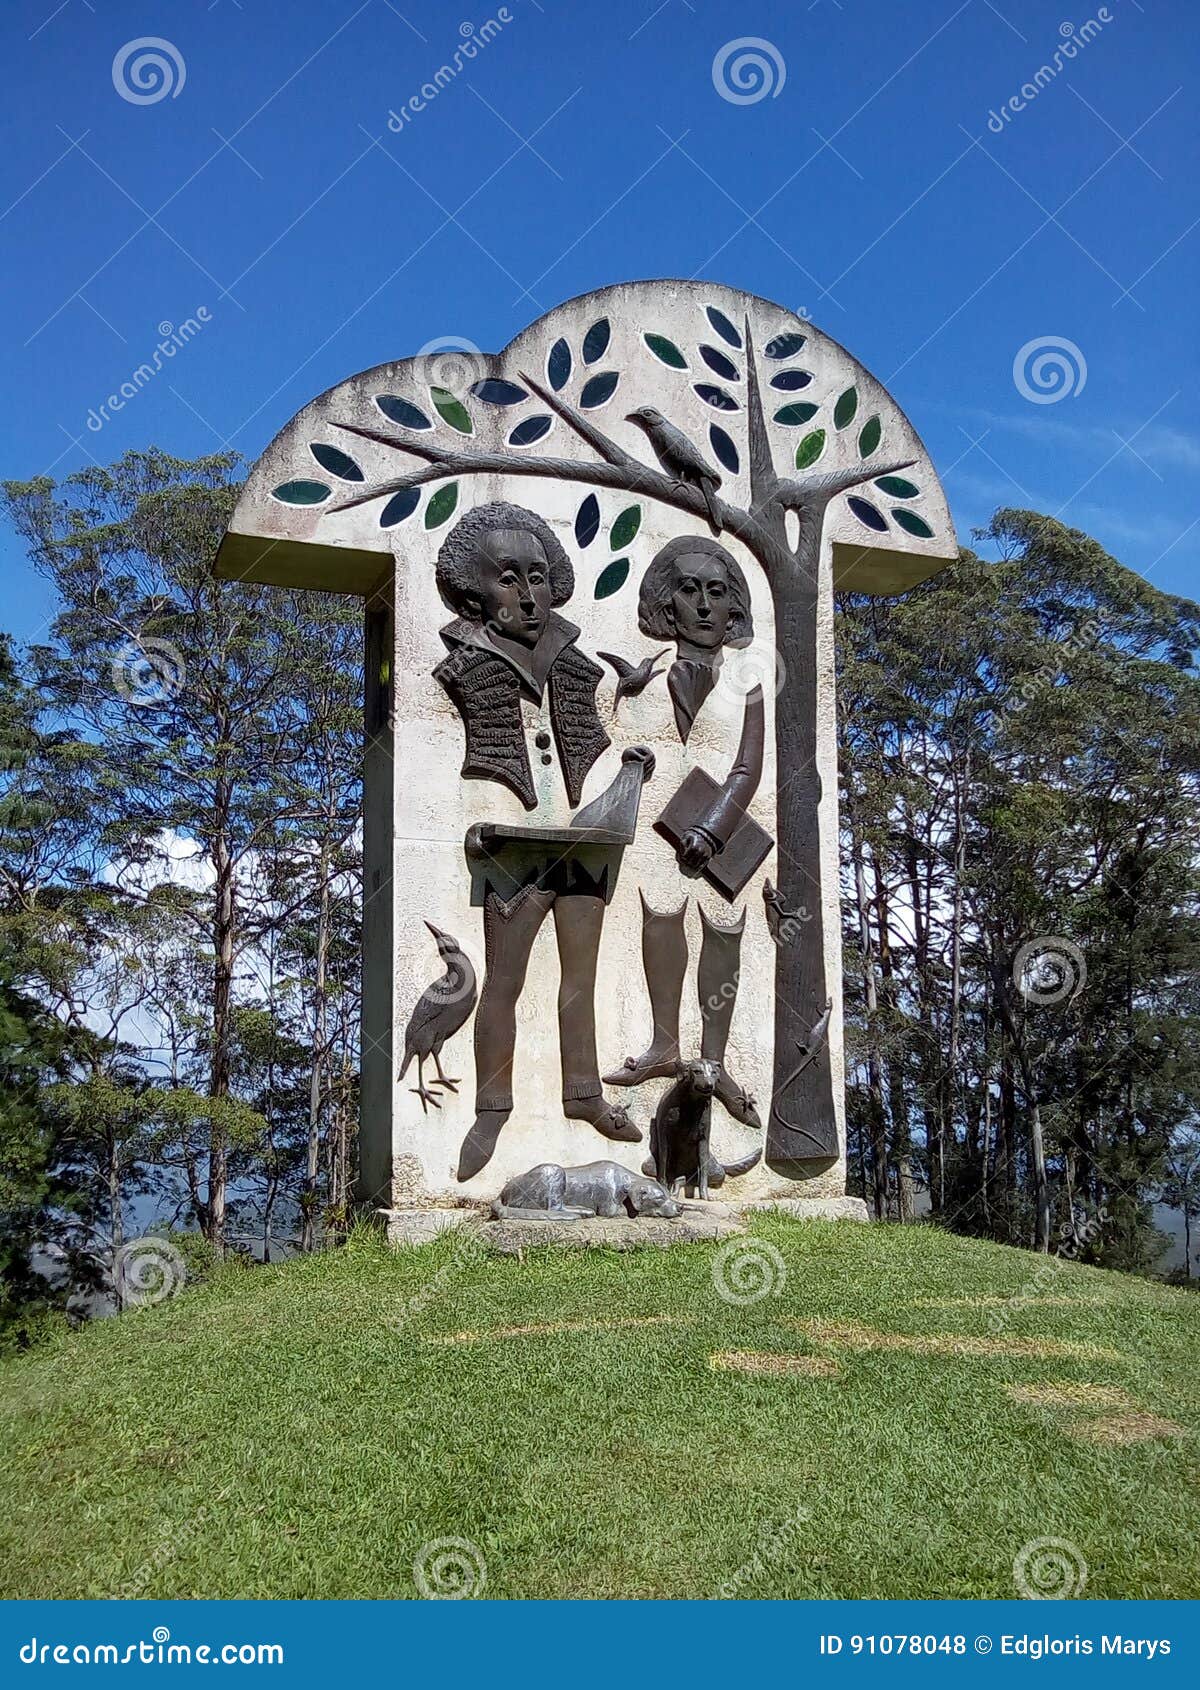 bolÃÂ­var and bello sculpture by artist marisol escobar